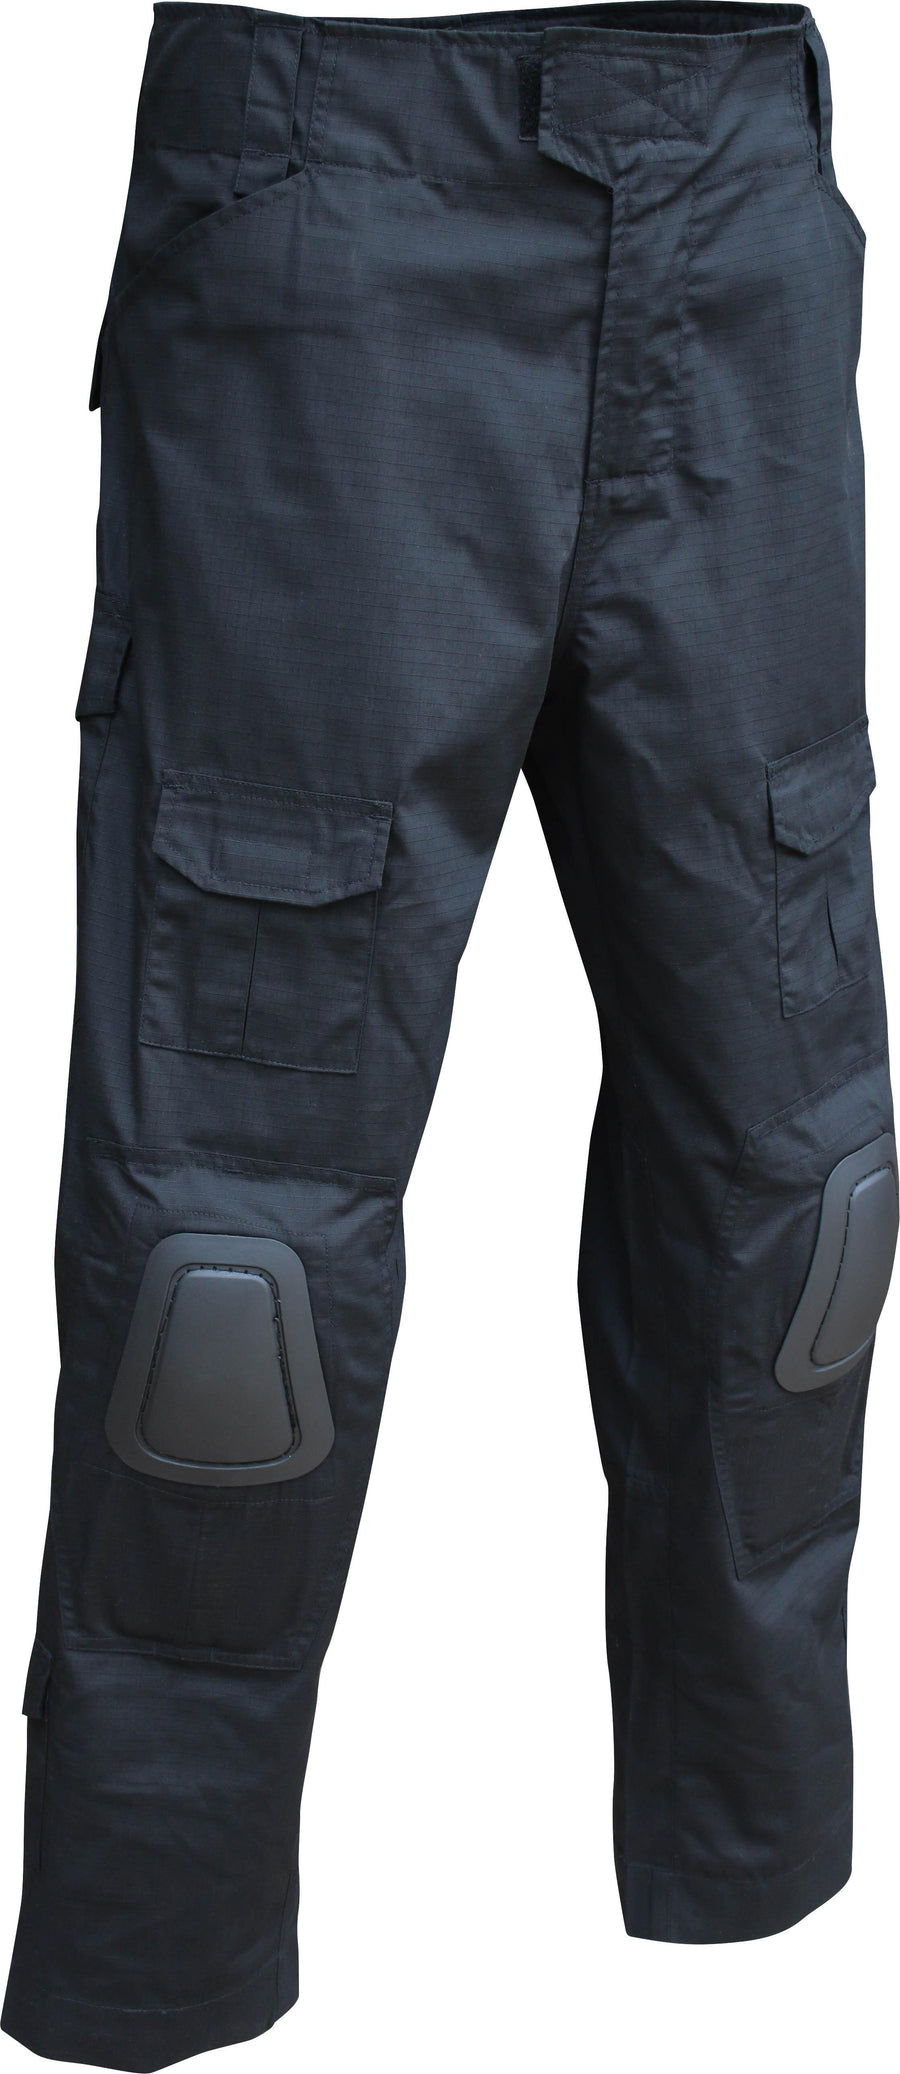 Viper Tactical Elite Jacket and Contractors Pants — TacticalTwo